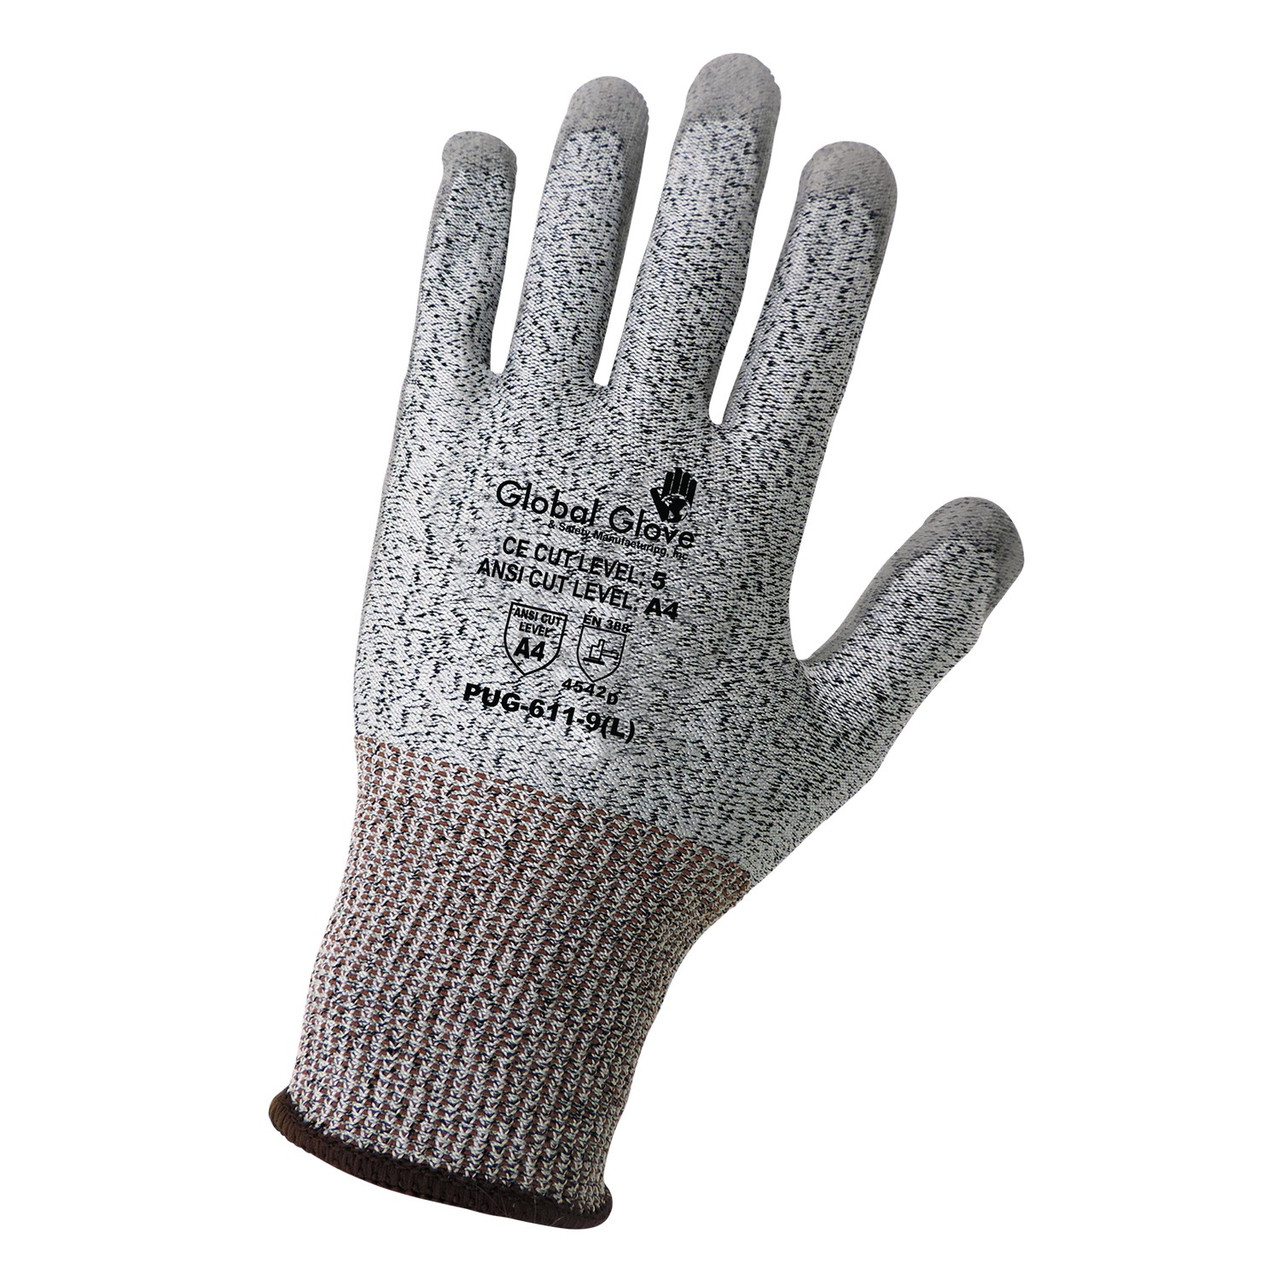 Global Glove PUG-611 - Samurai Glove - Polyurethane Coated Cut ...